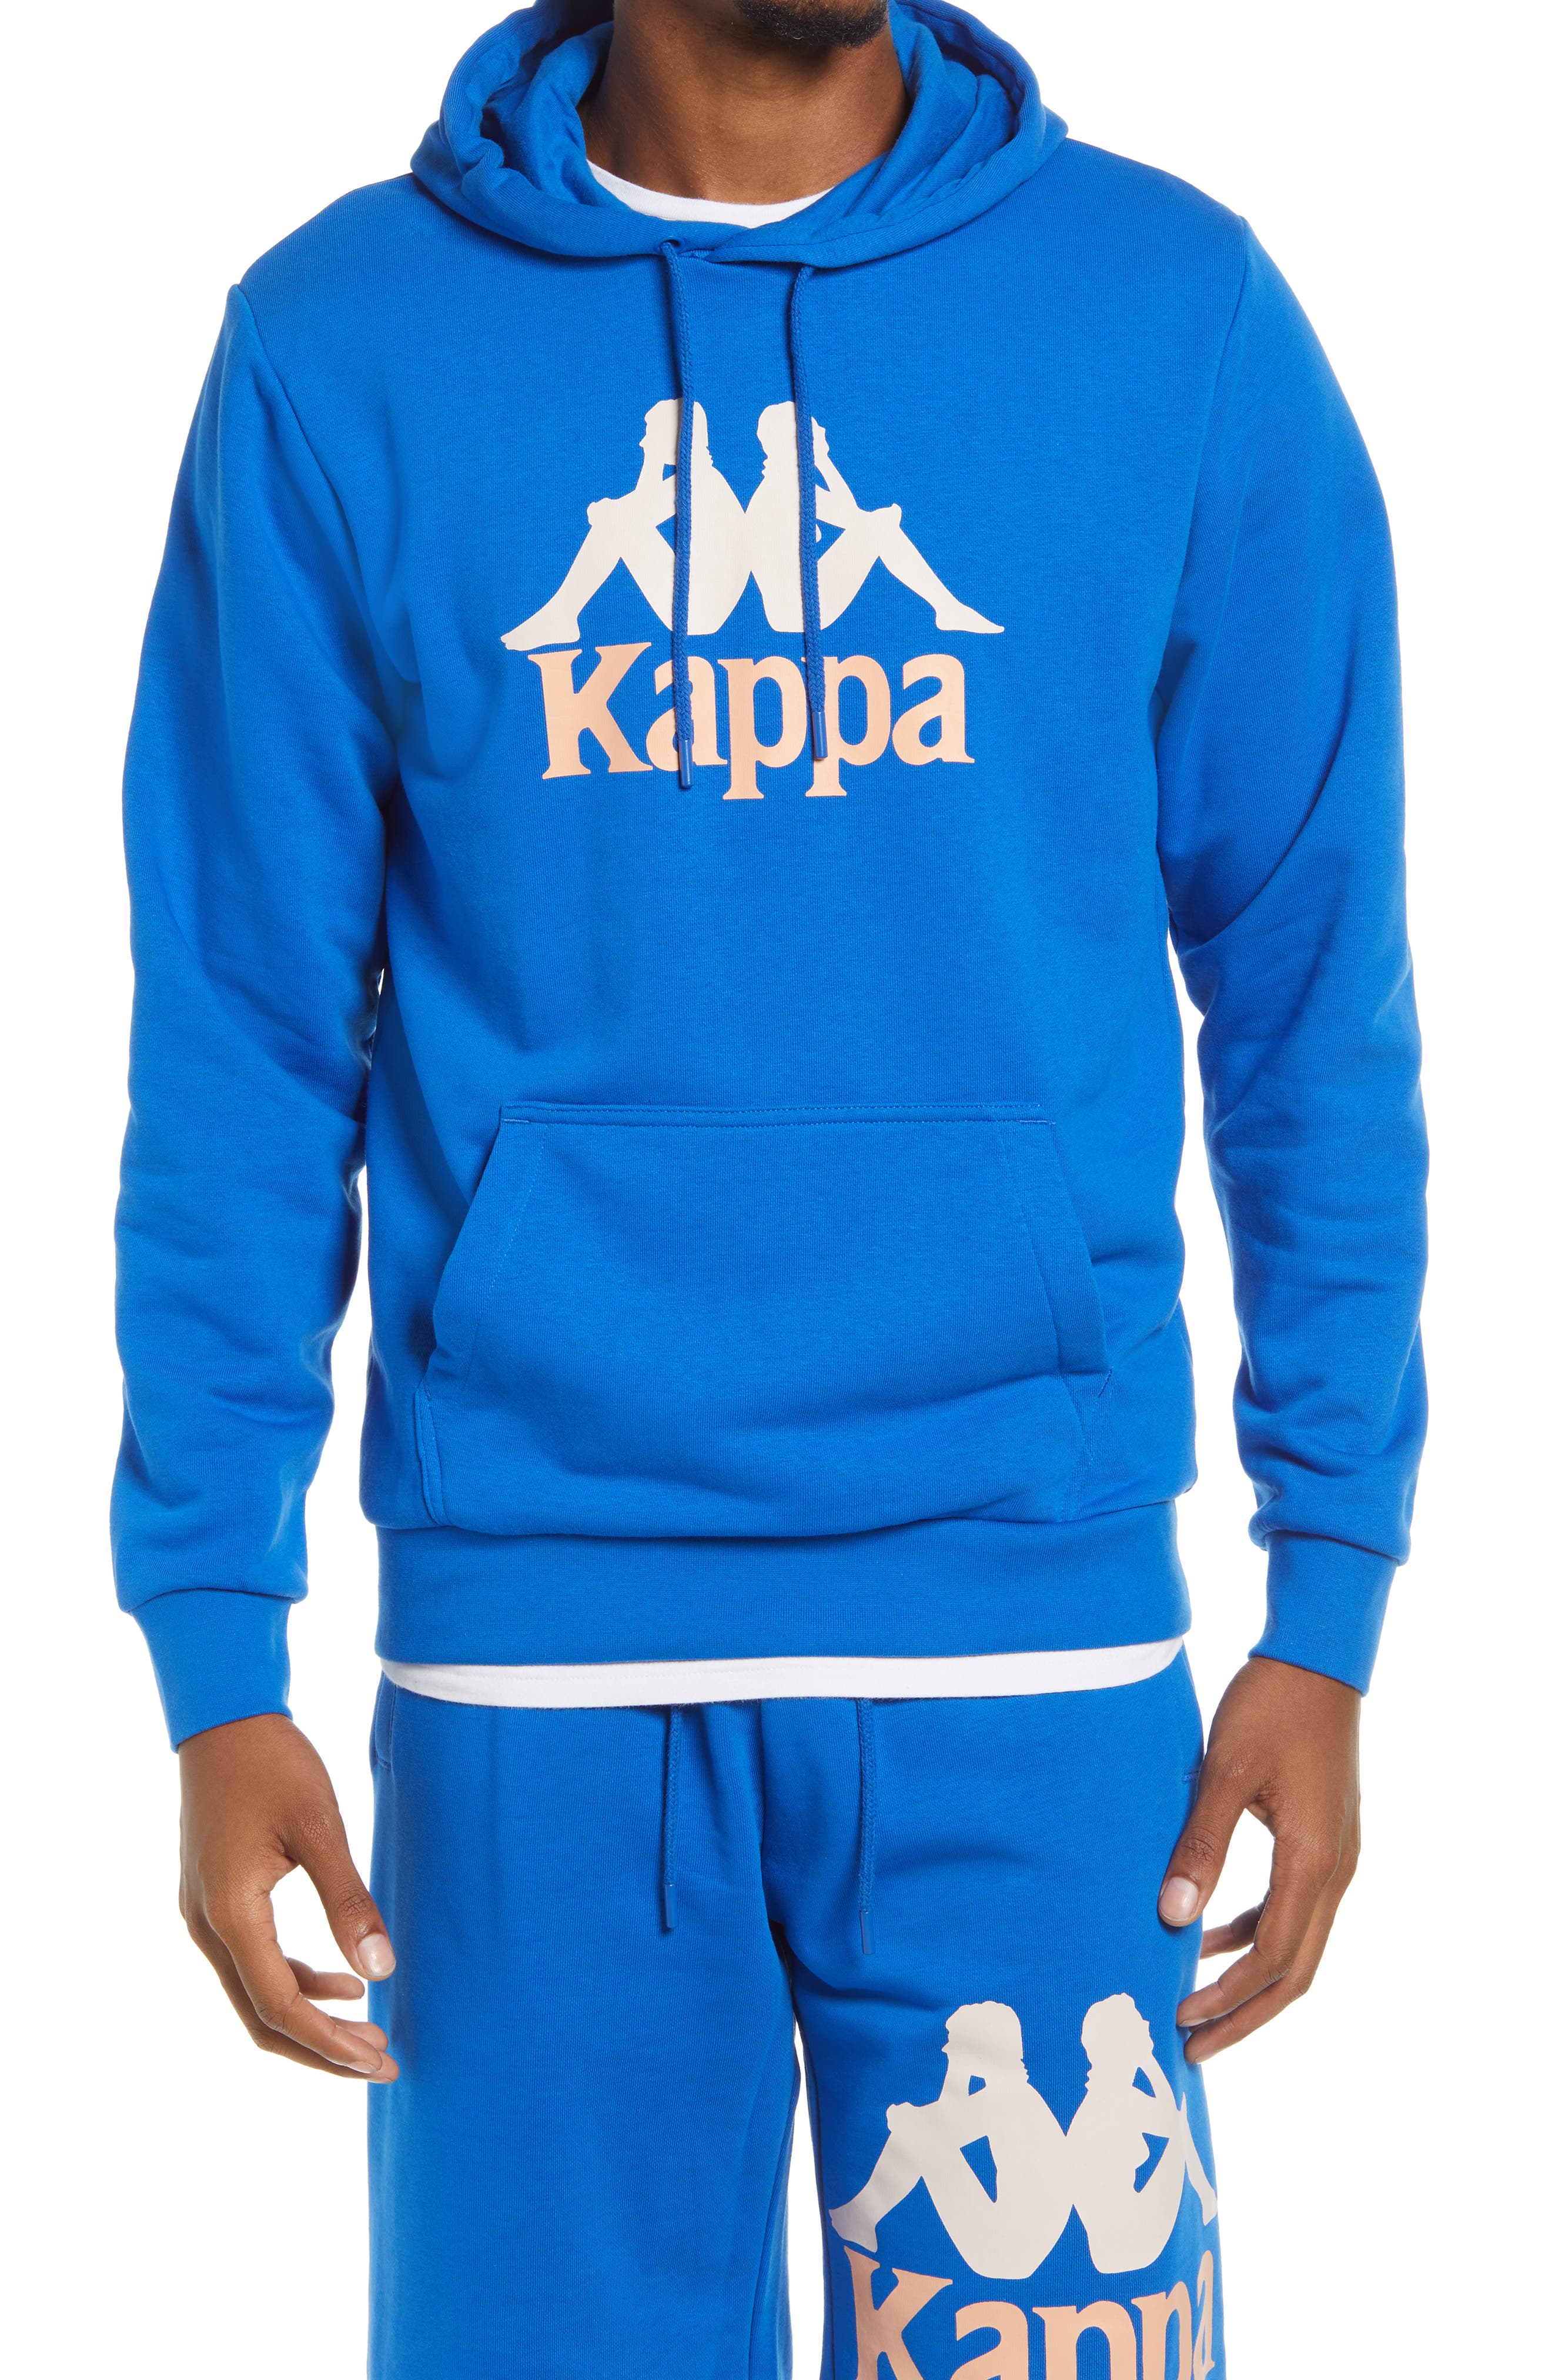 kappa merchandise